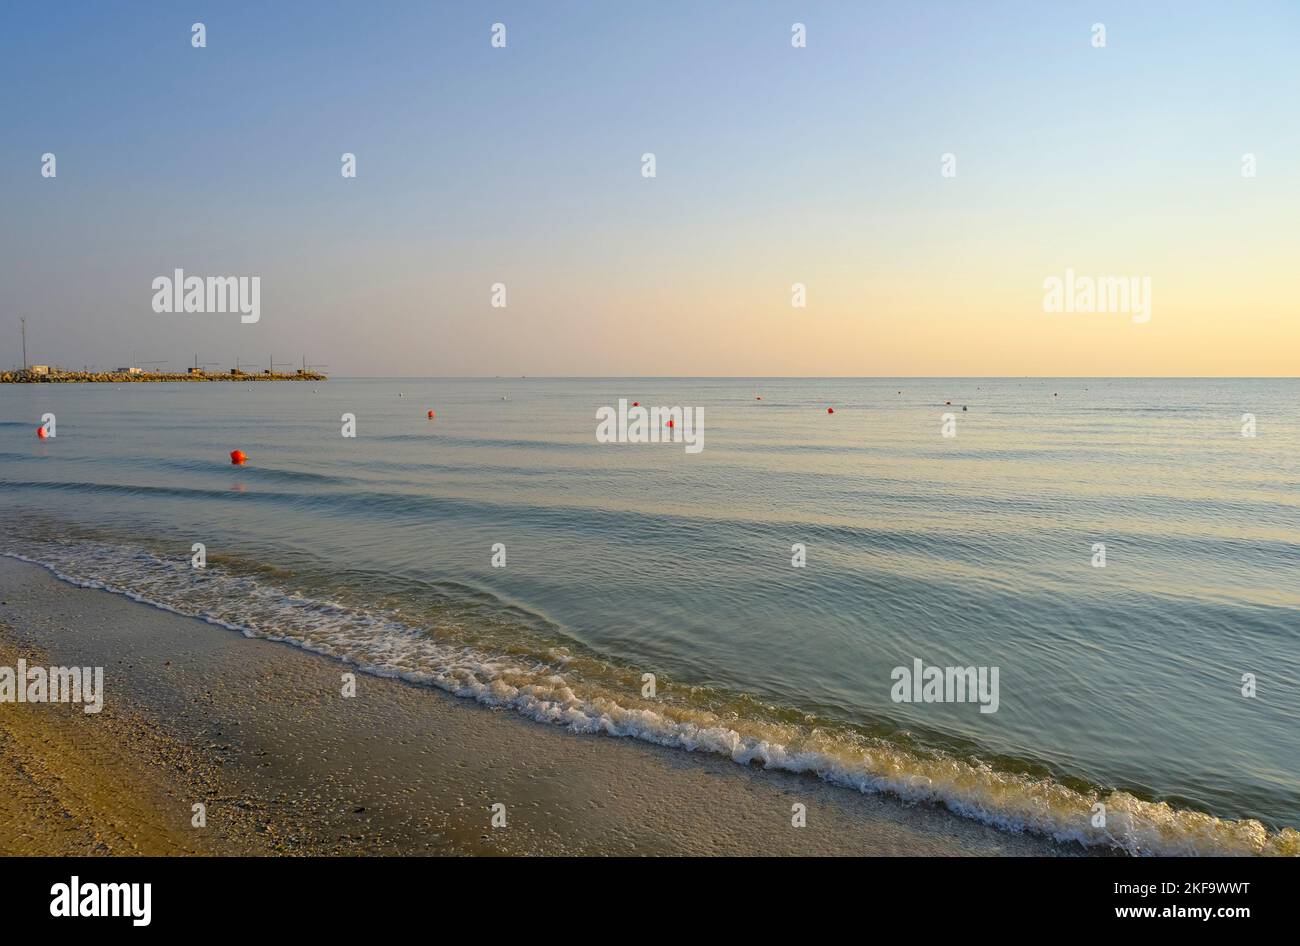 lever du soleil sur la plage de sable avec une ligne de bouées rouges. Littoral, ligne horizontale, arrière-plan naturel. Lever du soleil Banque D'Images